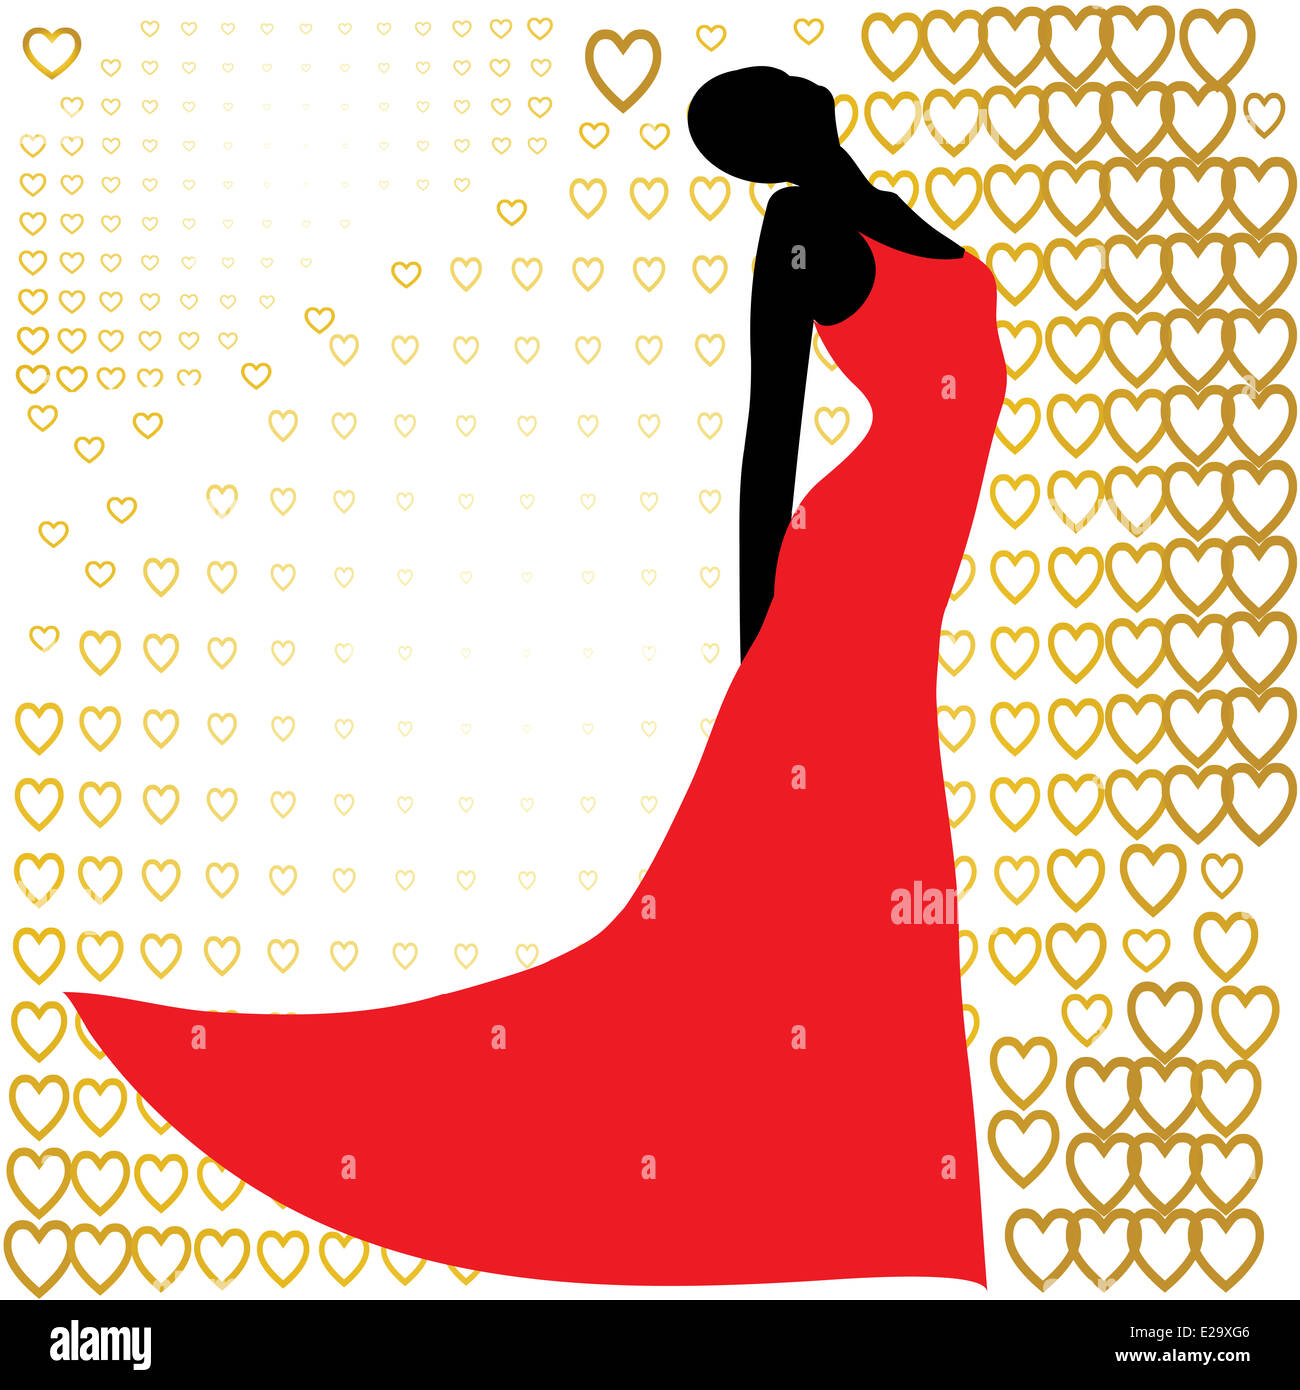 schwarze Silhouette der schönen Frau im roten Kleid Stockfotografie - Alamy